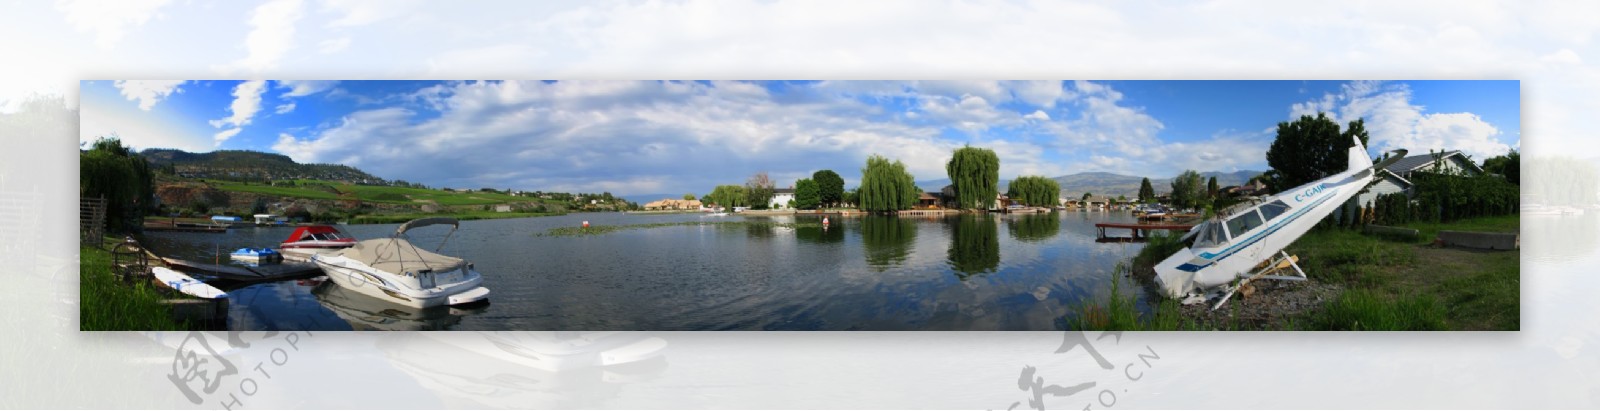 湖边小镇全景图图片